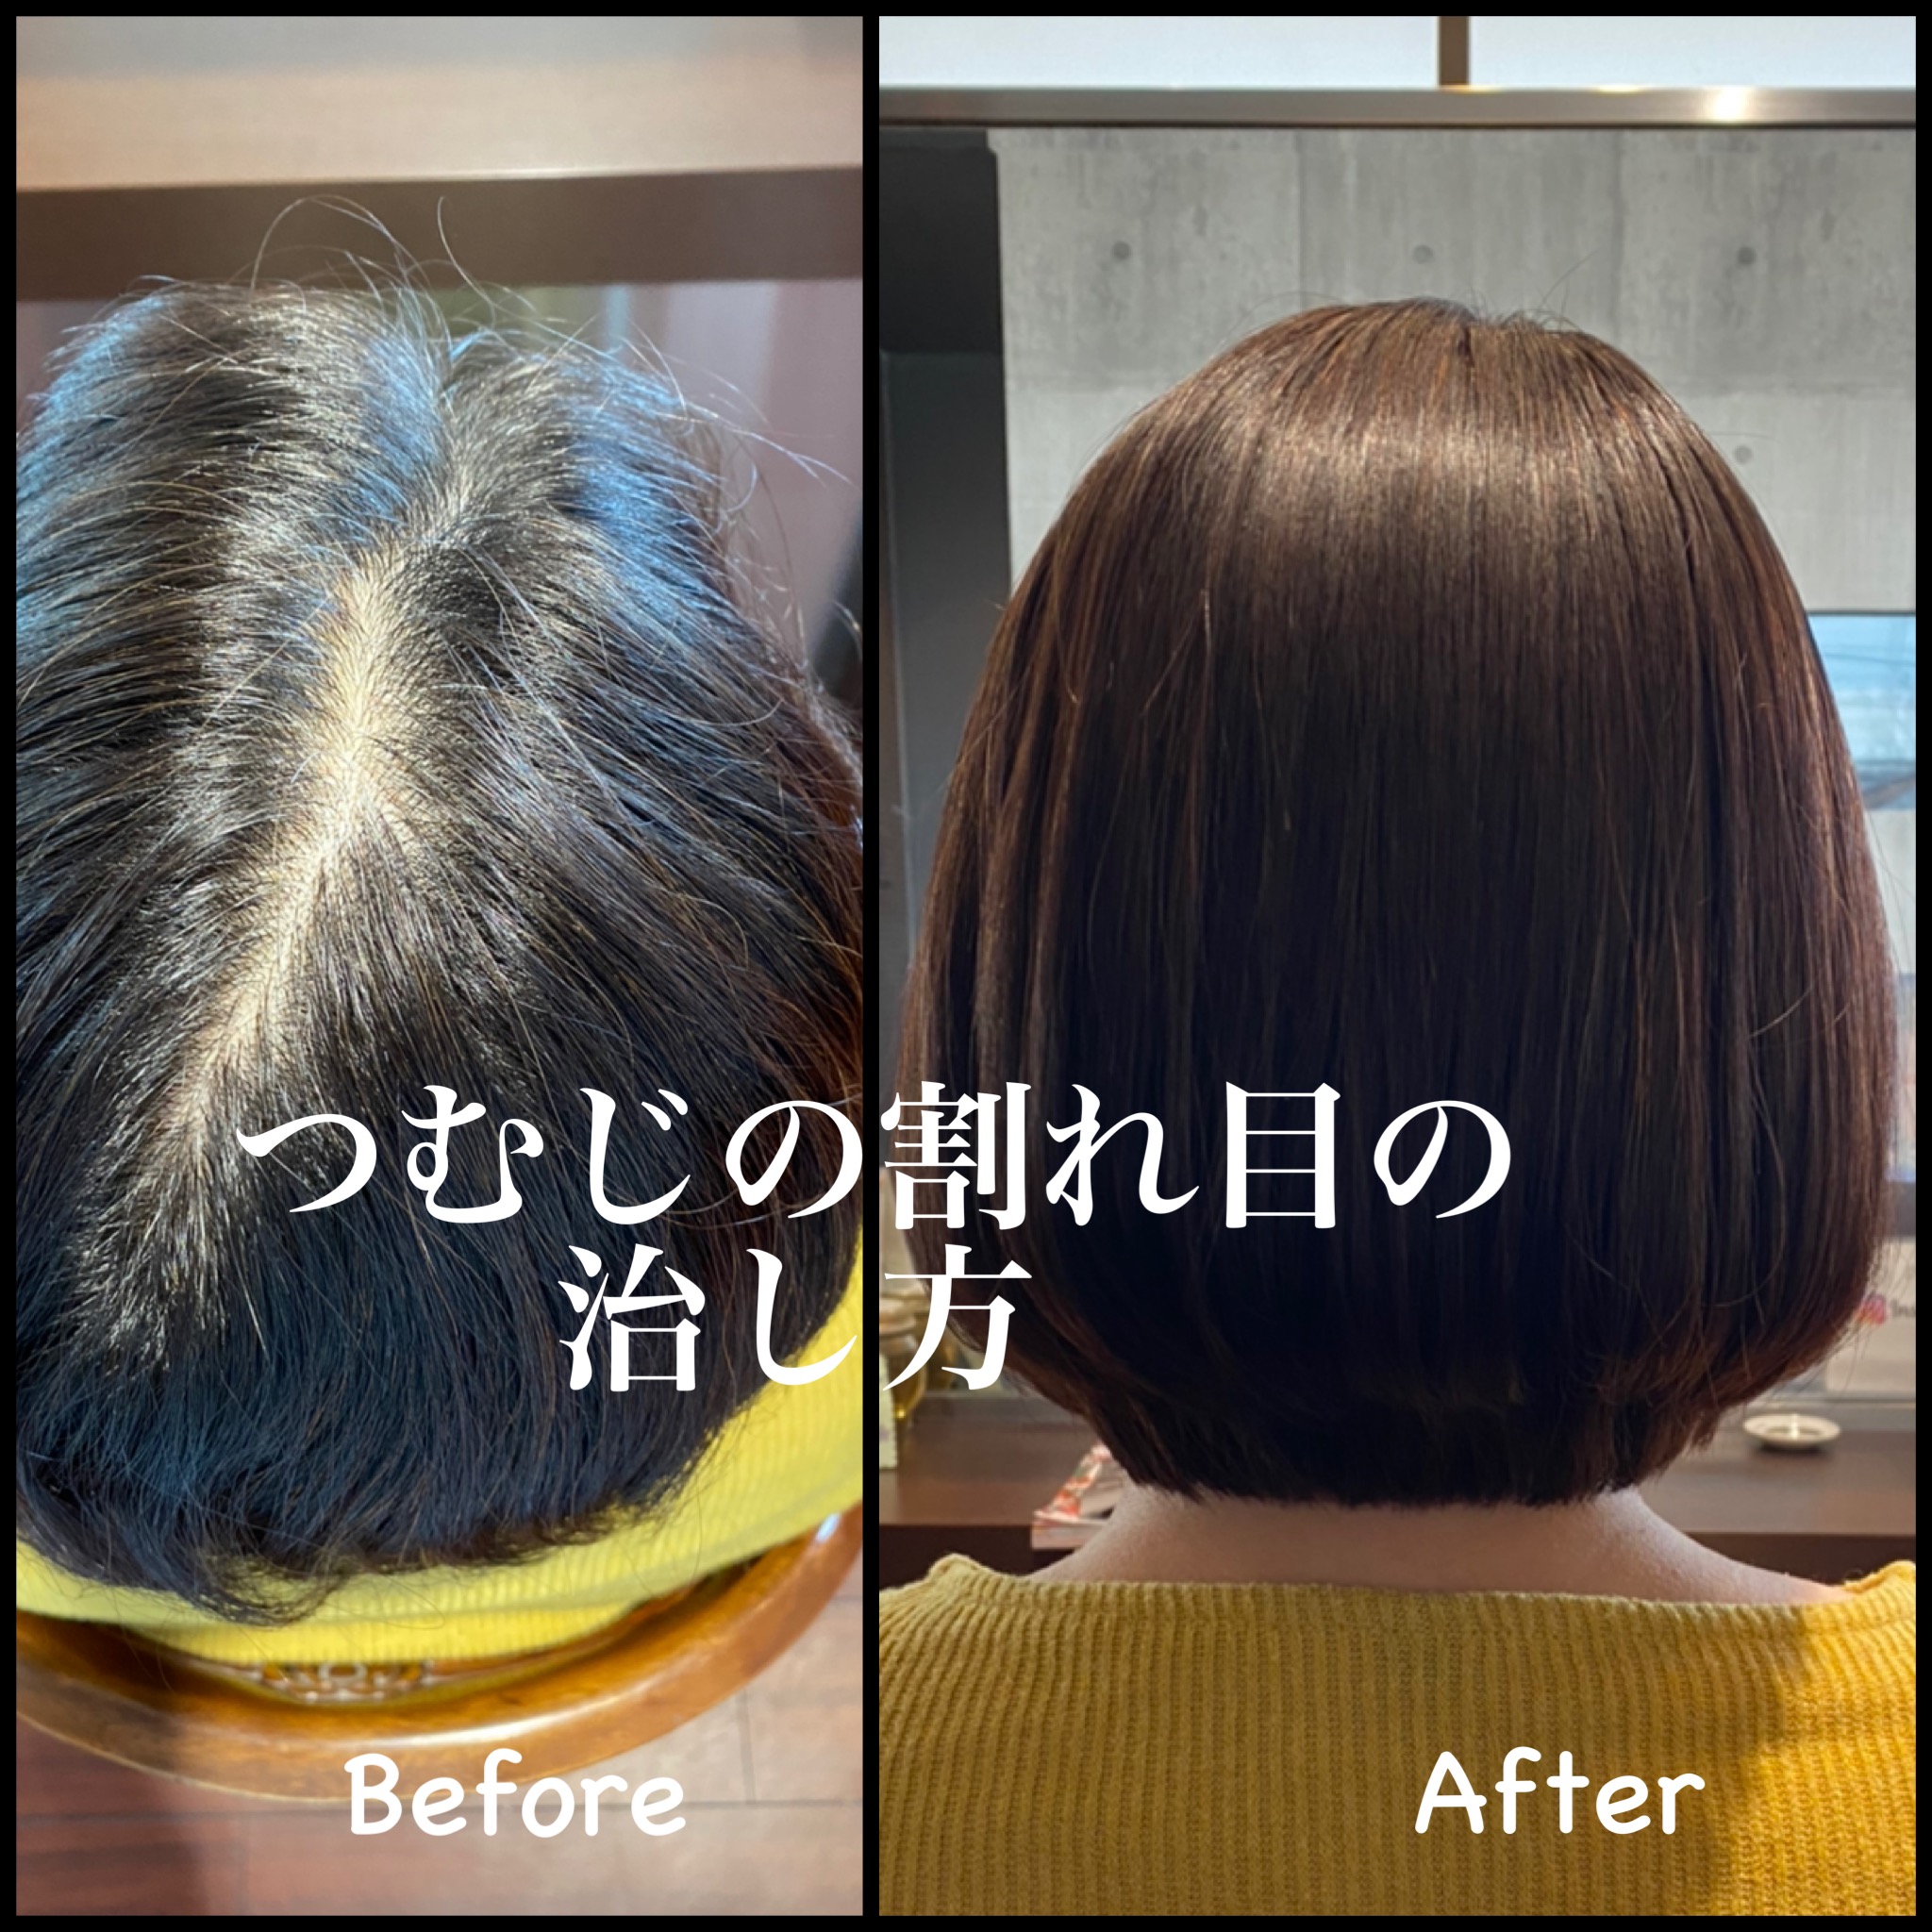 つむじが割れてしまう原因とつむじの割れ目を治す方法 Hair Space G O Dの美髪に導くヘアケアブログ